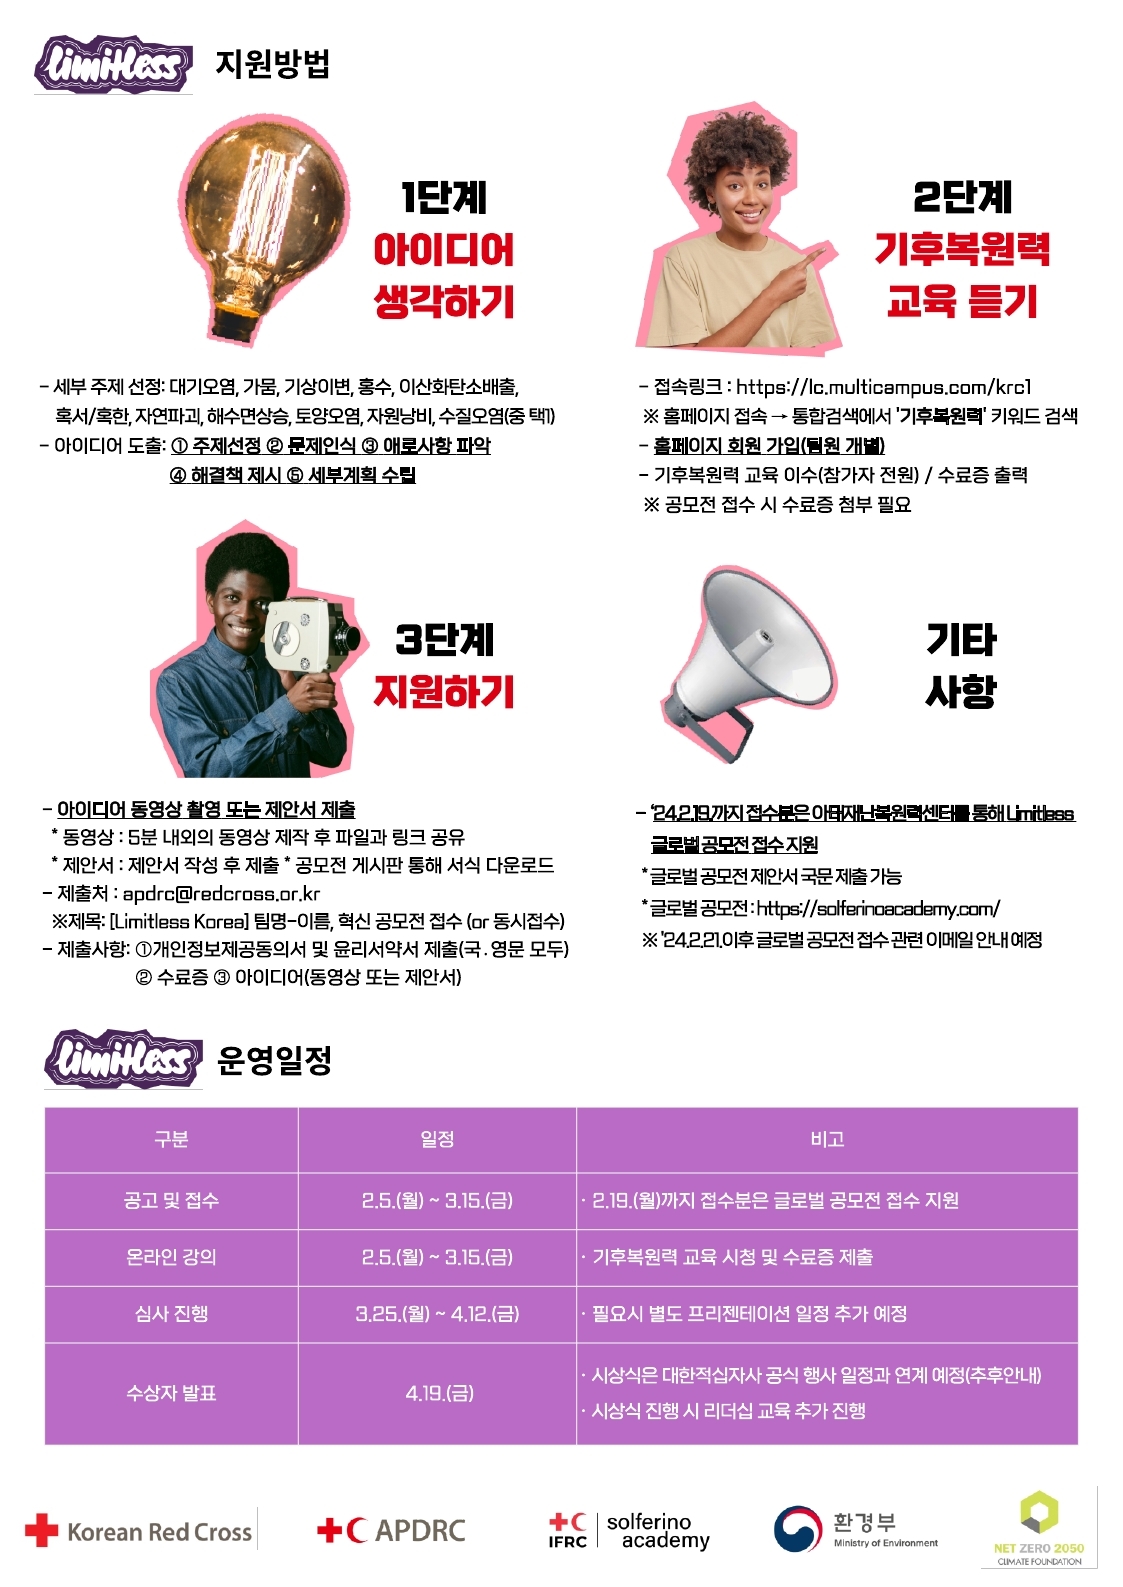 [대한적십자] 제1회 Limitless Korea 혁신 공모전 시행 안내 첨부파일  - 붙임 2. Limitless Korea 혁신 공모전 포스터.pdf_page_2.jpg